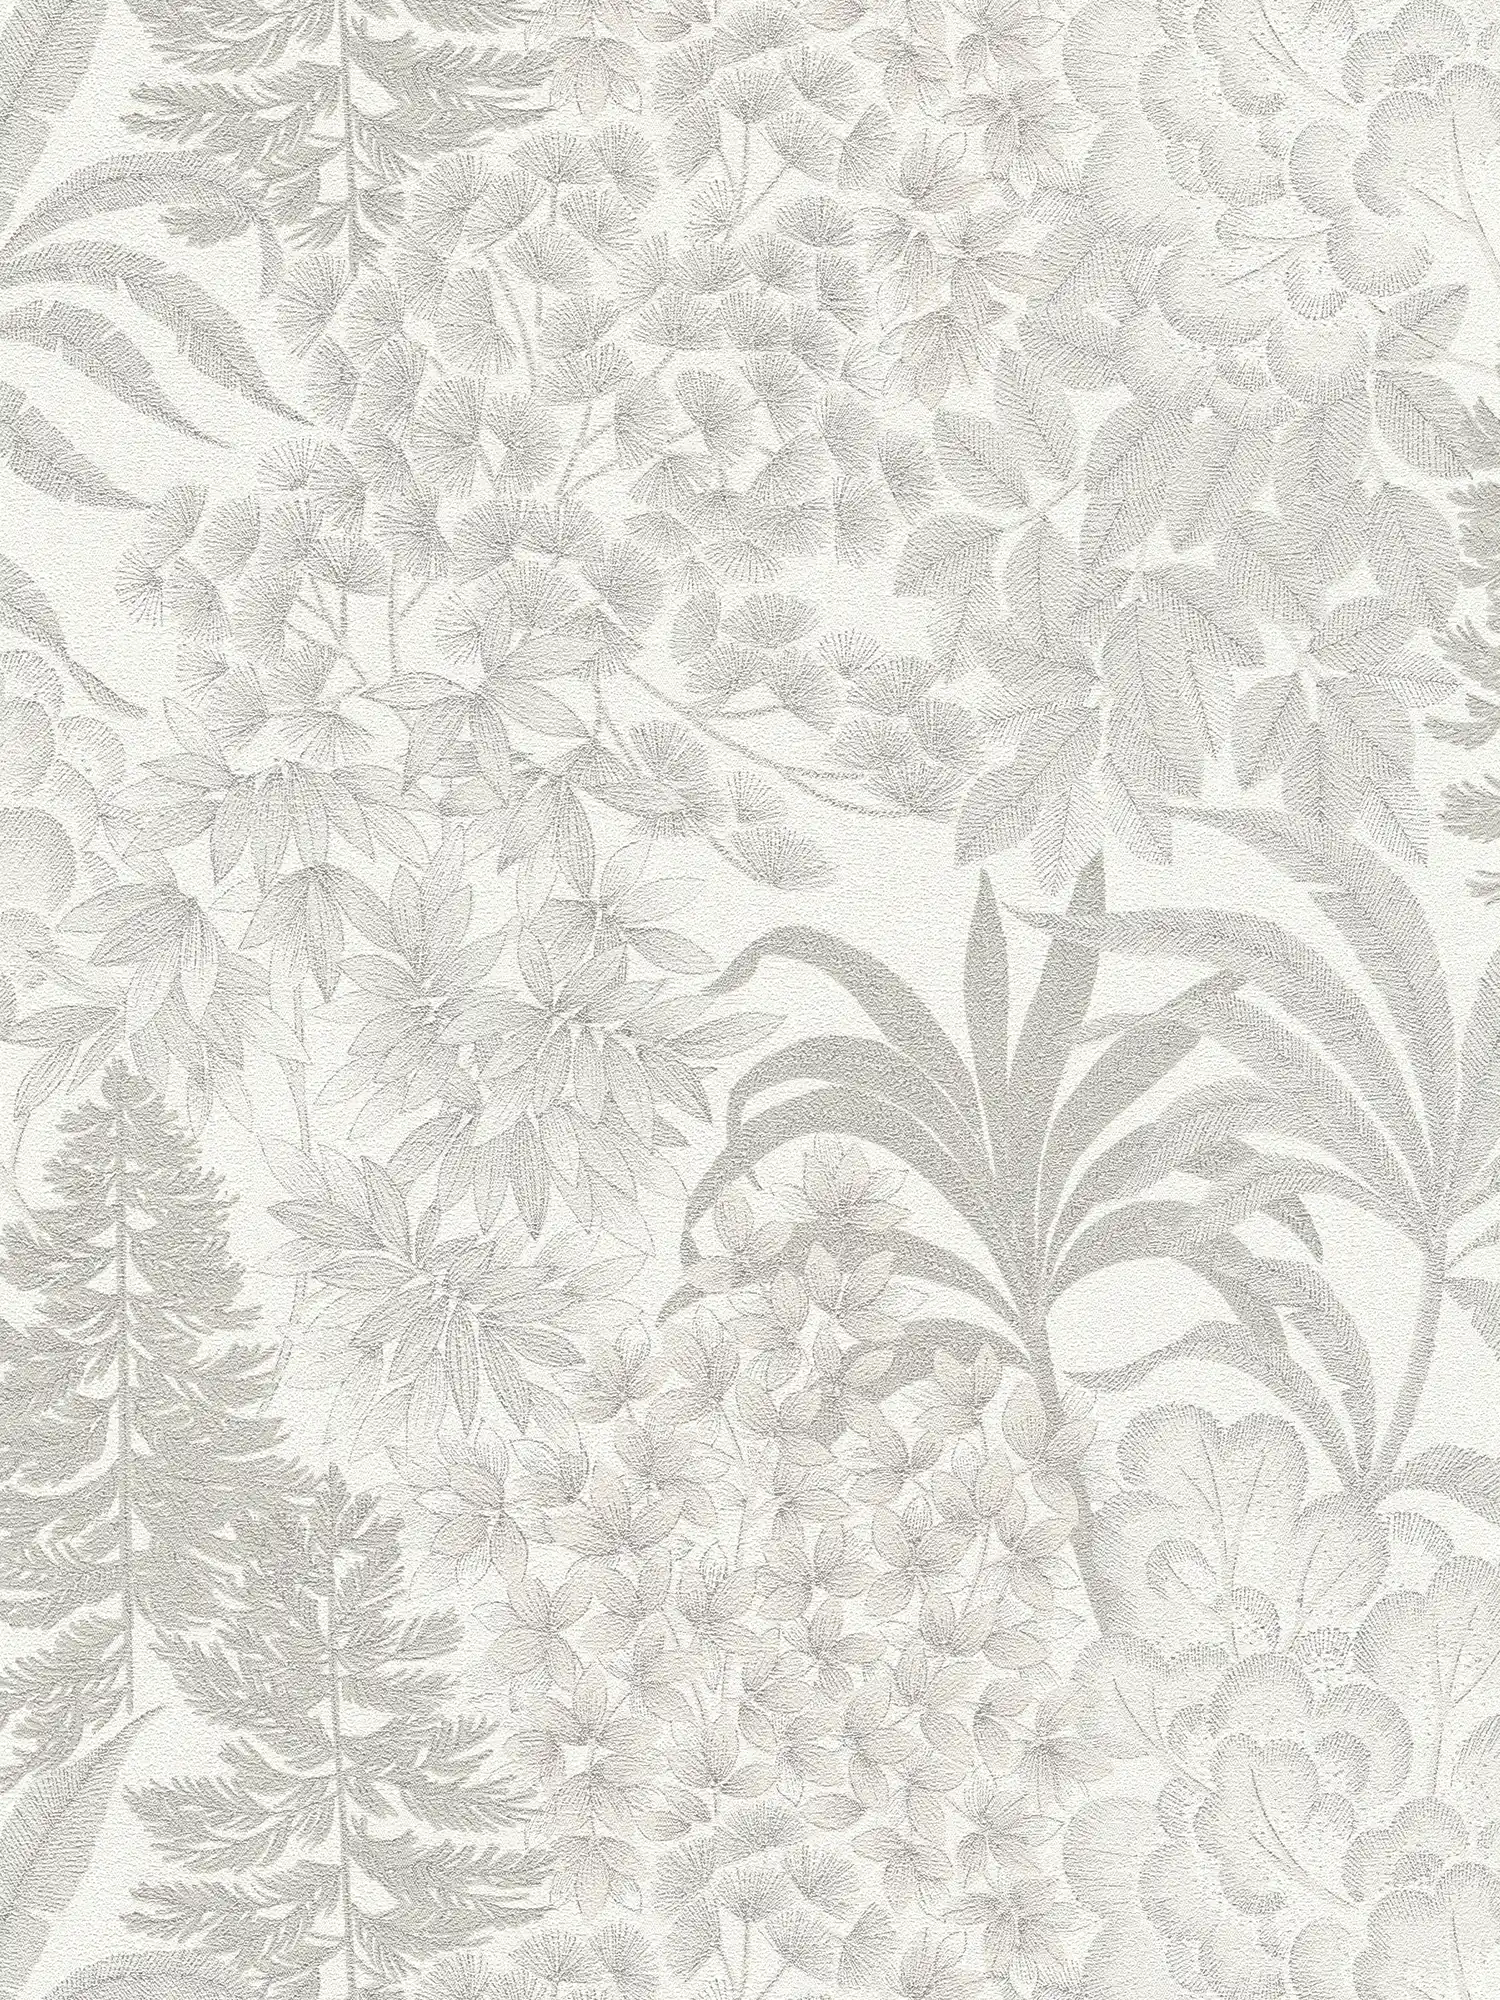 Leicht glänzende Blumentapete in dezenter Farbe – Weiß, Grau, Silber
